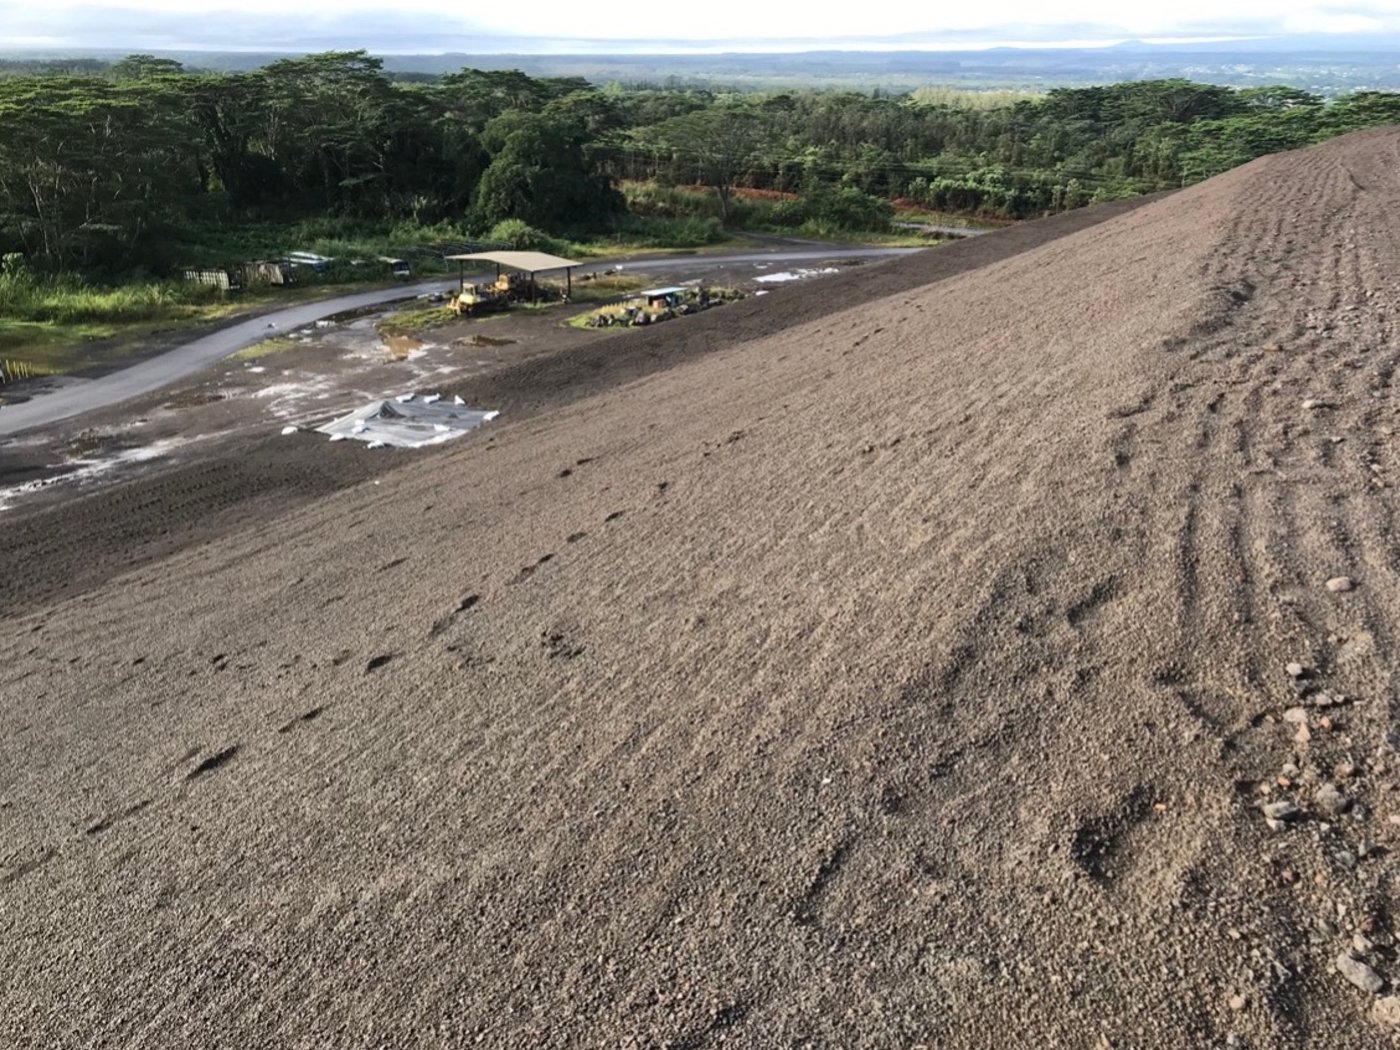 El sedimento natural del área circundante era una arena volcánica angulosa y afilada que dificultaba mucho el crecimiento de la vegetación natural en el cierre.